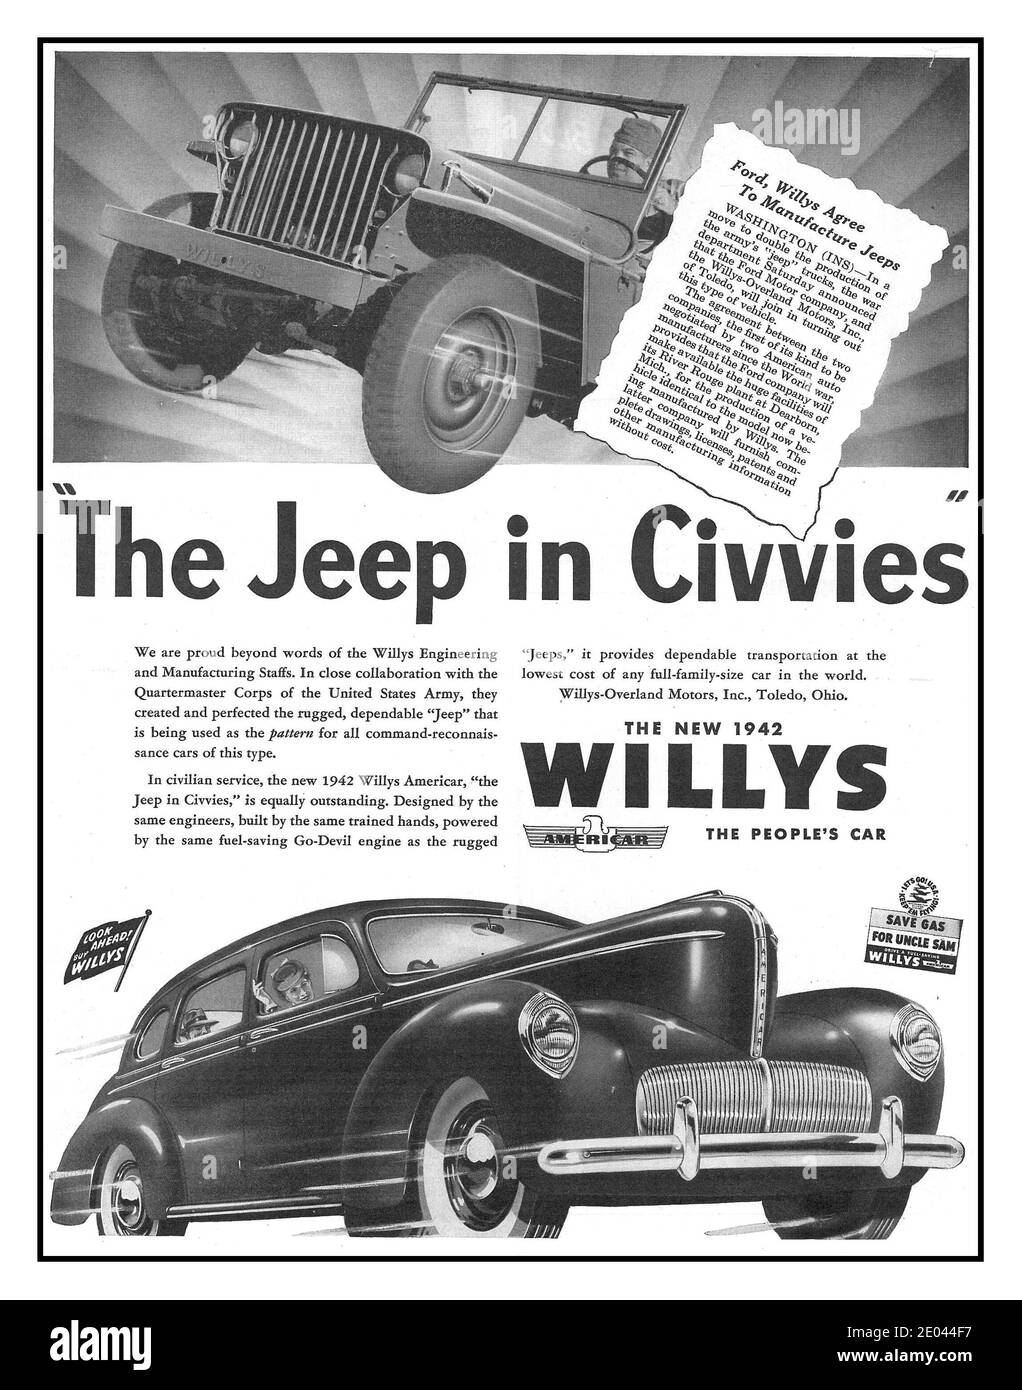 WILLYS JEEP WW2 Publicité 1942 le nouveau Willys Saloon People’s. Voiture “la Jeep dans Civies” la voiture américaine de la Seconde Guerre mondiale publicité en temps de guerre des années 1940 Banque D'Images